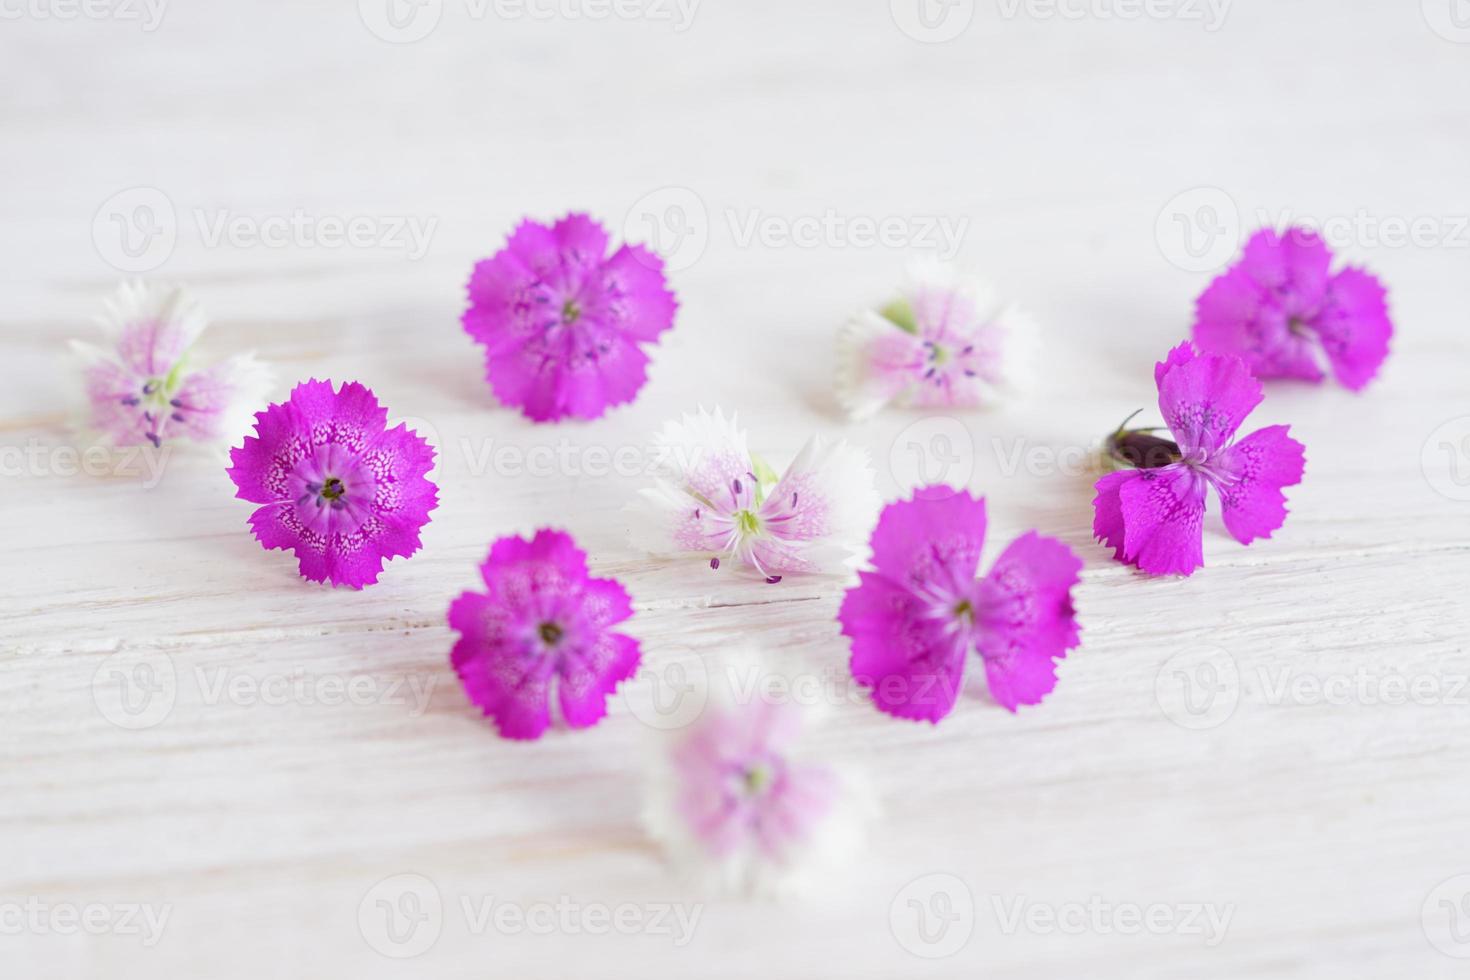 fleurs de chamaenerion sur fond de bois blanc photo